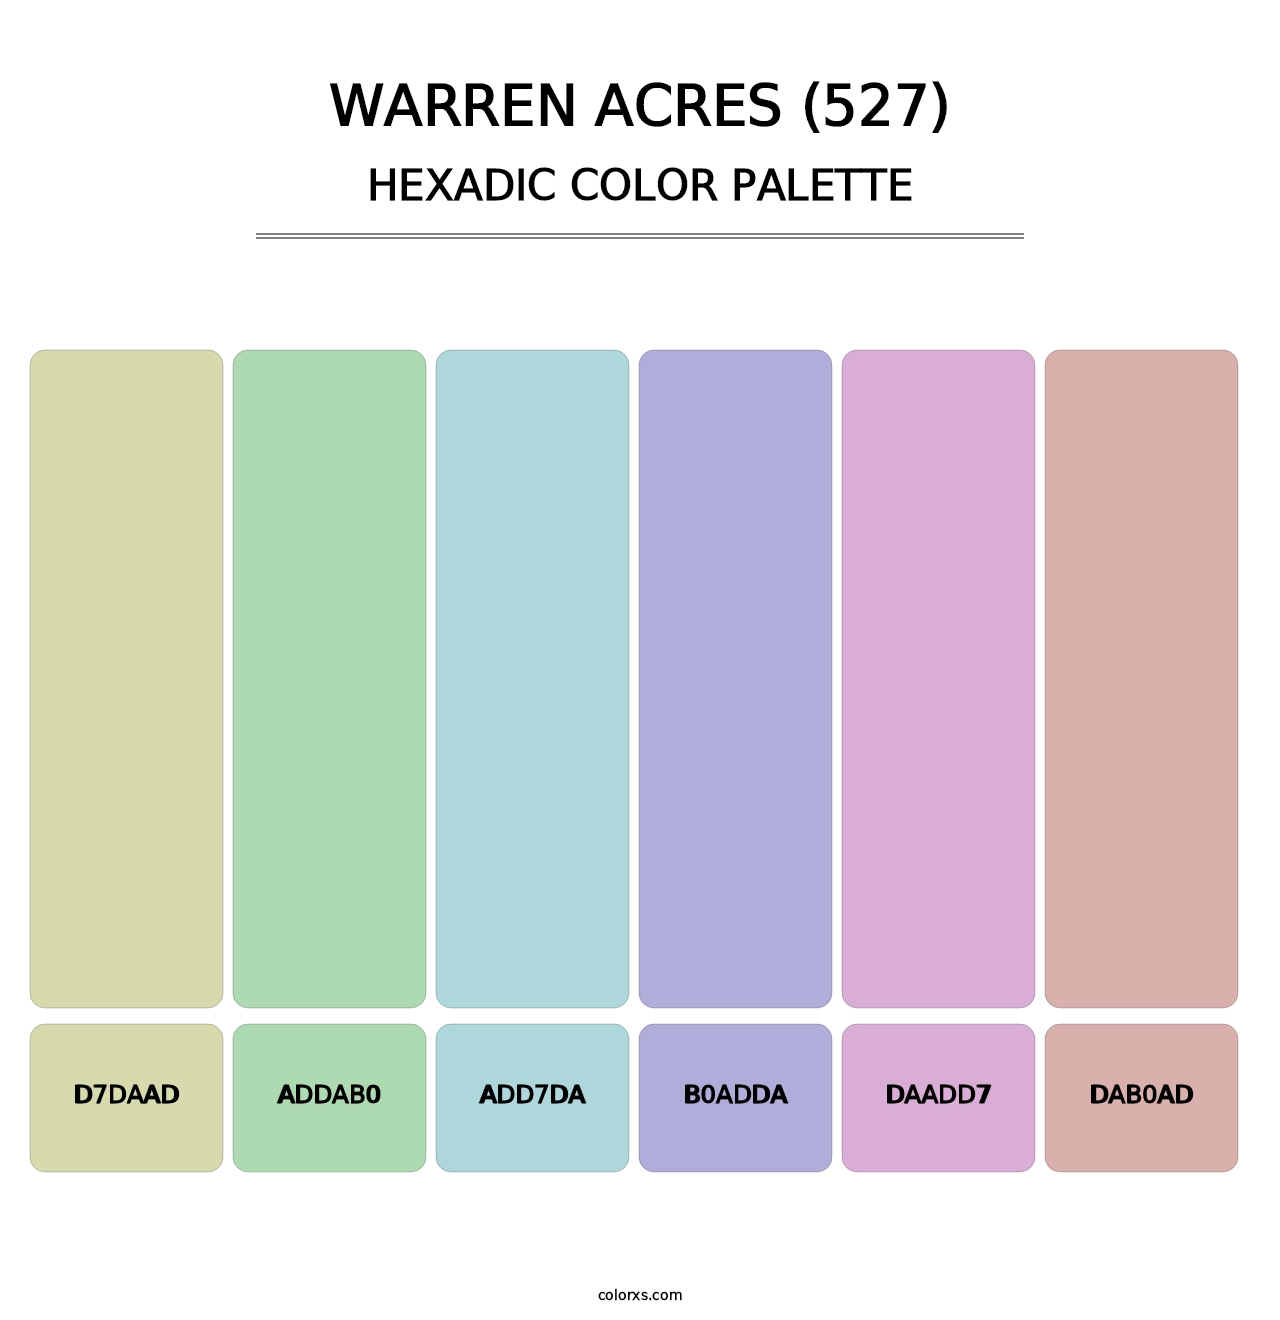 Warren Acres (527) - Hexadic Color Palette